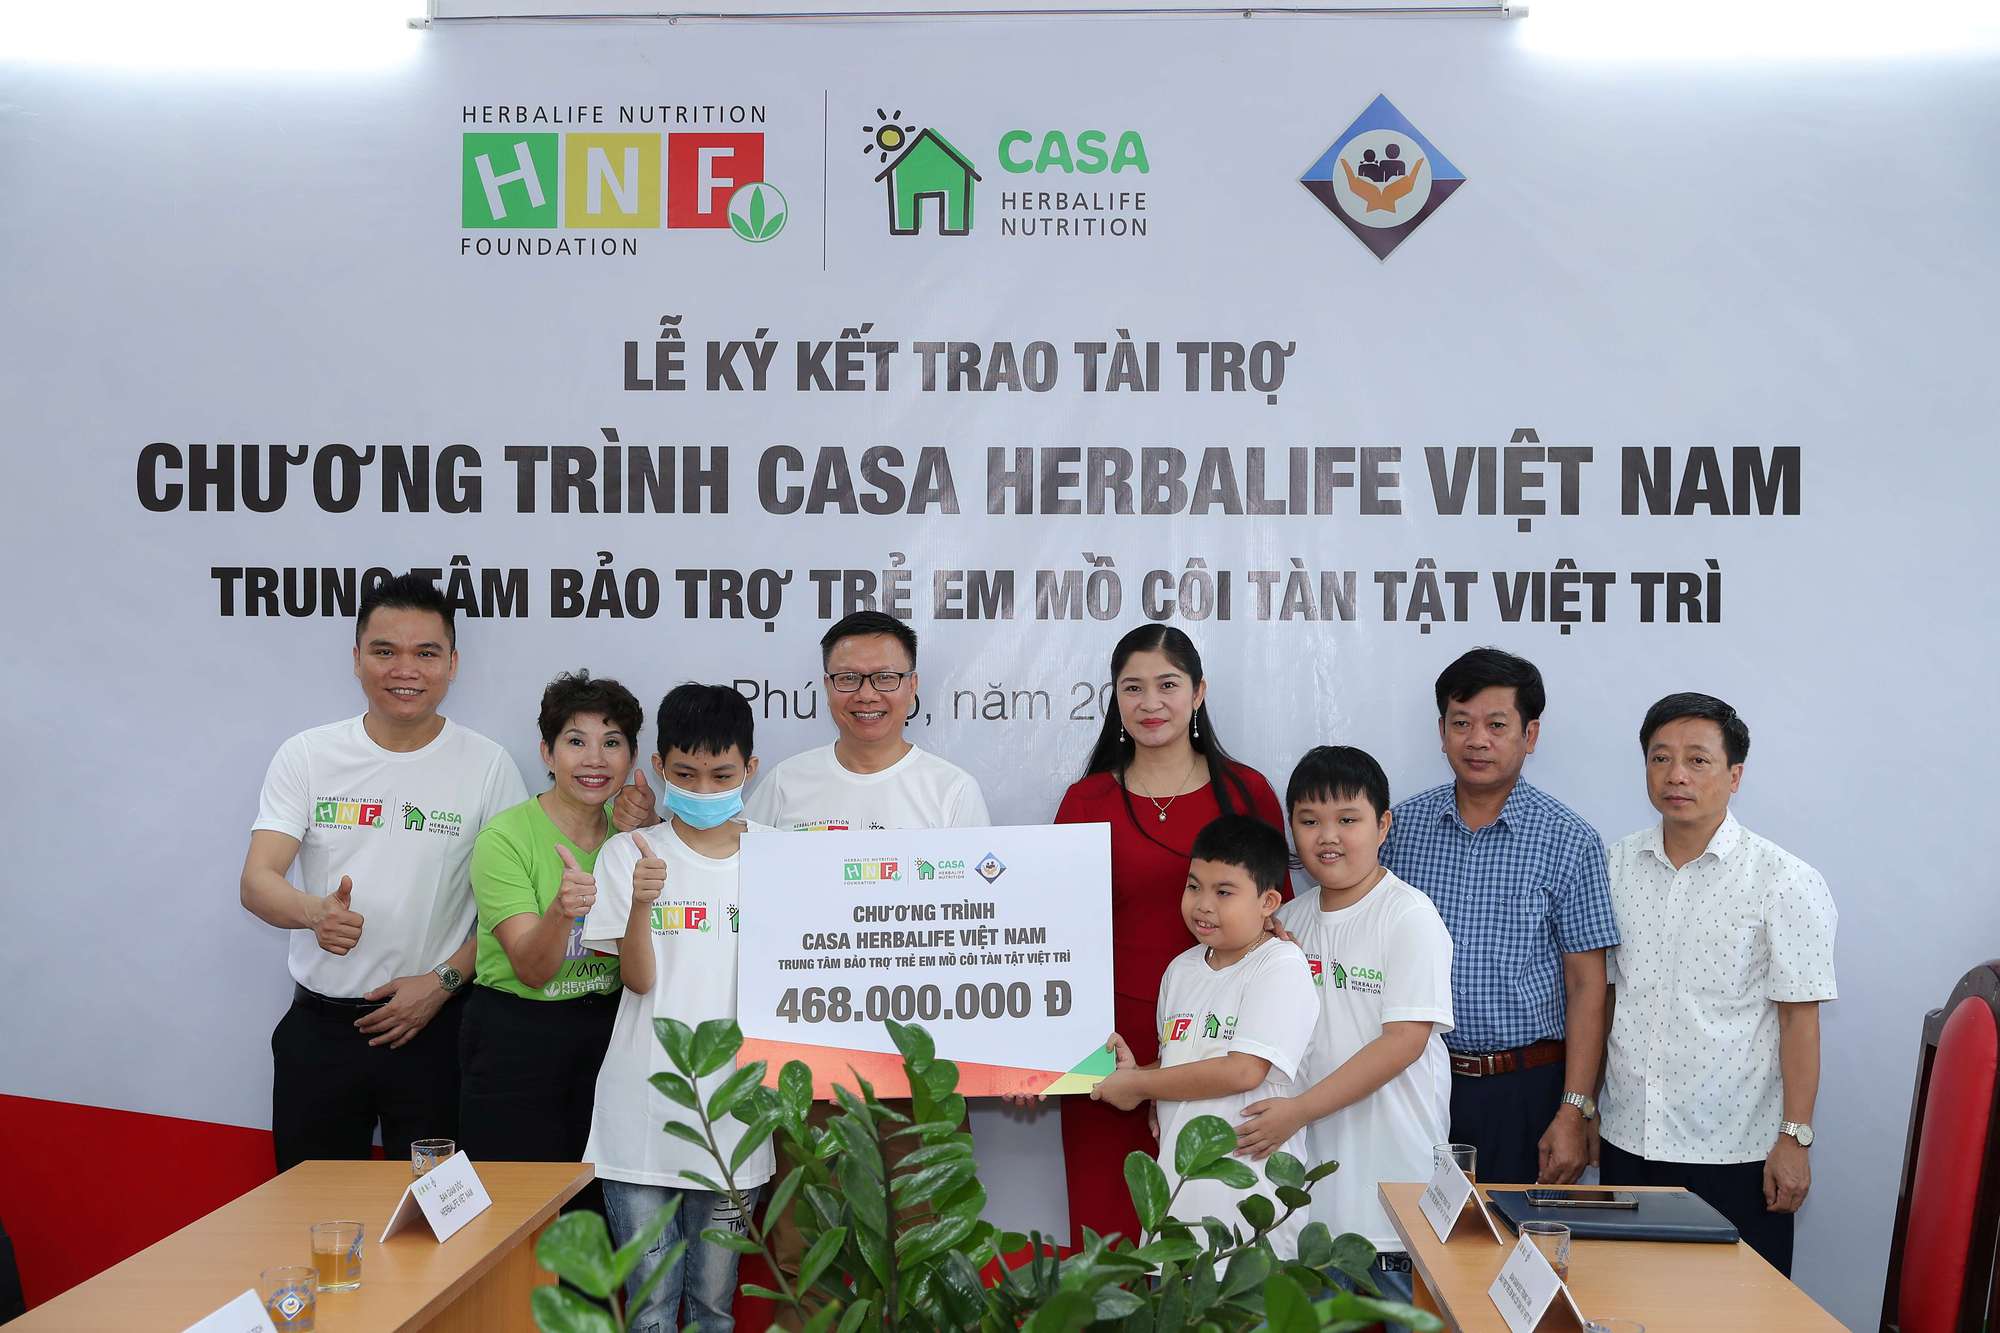 Herbalife Việt Nam hỗ trợ dinh dưỡng lành mạnh cho trẻ em có hoàn cảnh khó khăn tại Trung Tâm Bảo Trợ Trẻ Mồ Côi Tàn Tật Việt Trì - Ảnh 1.